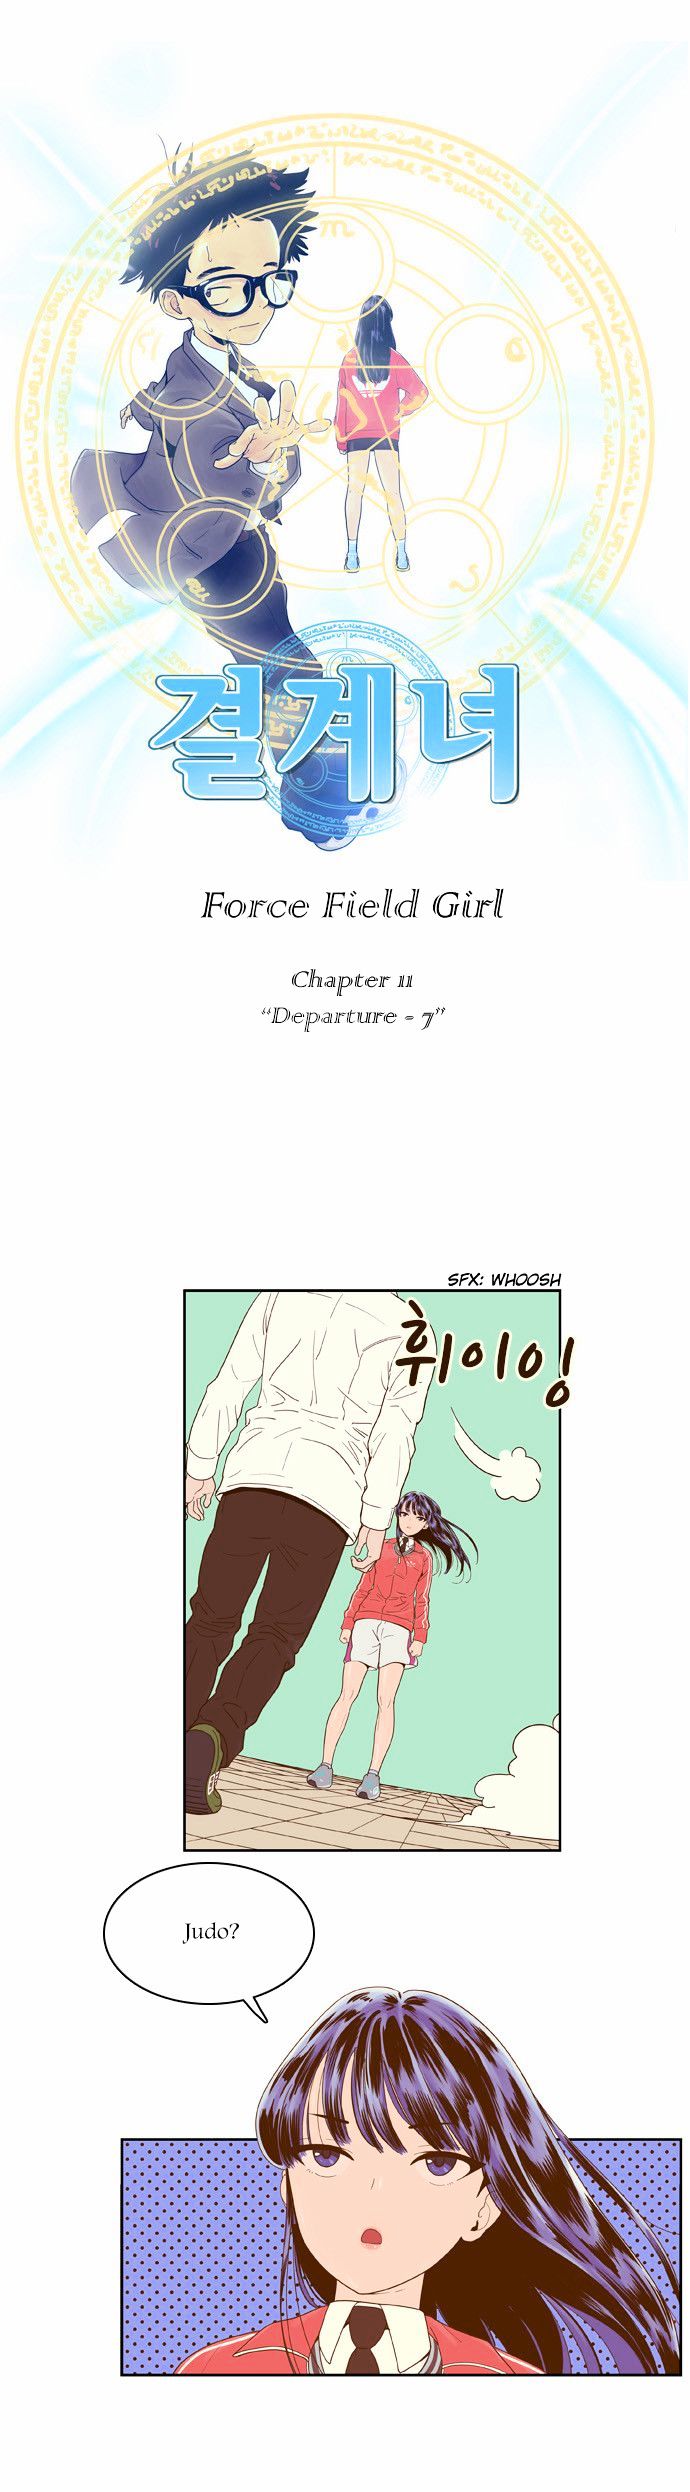 Force Field Girl 11 3